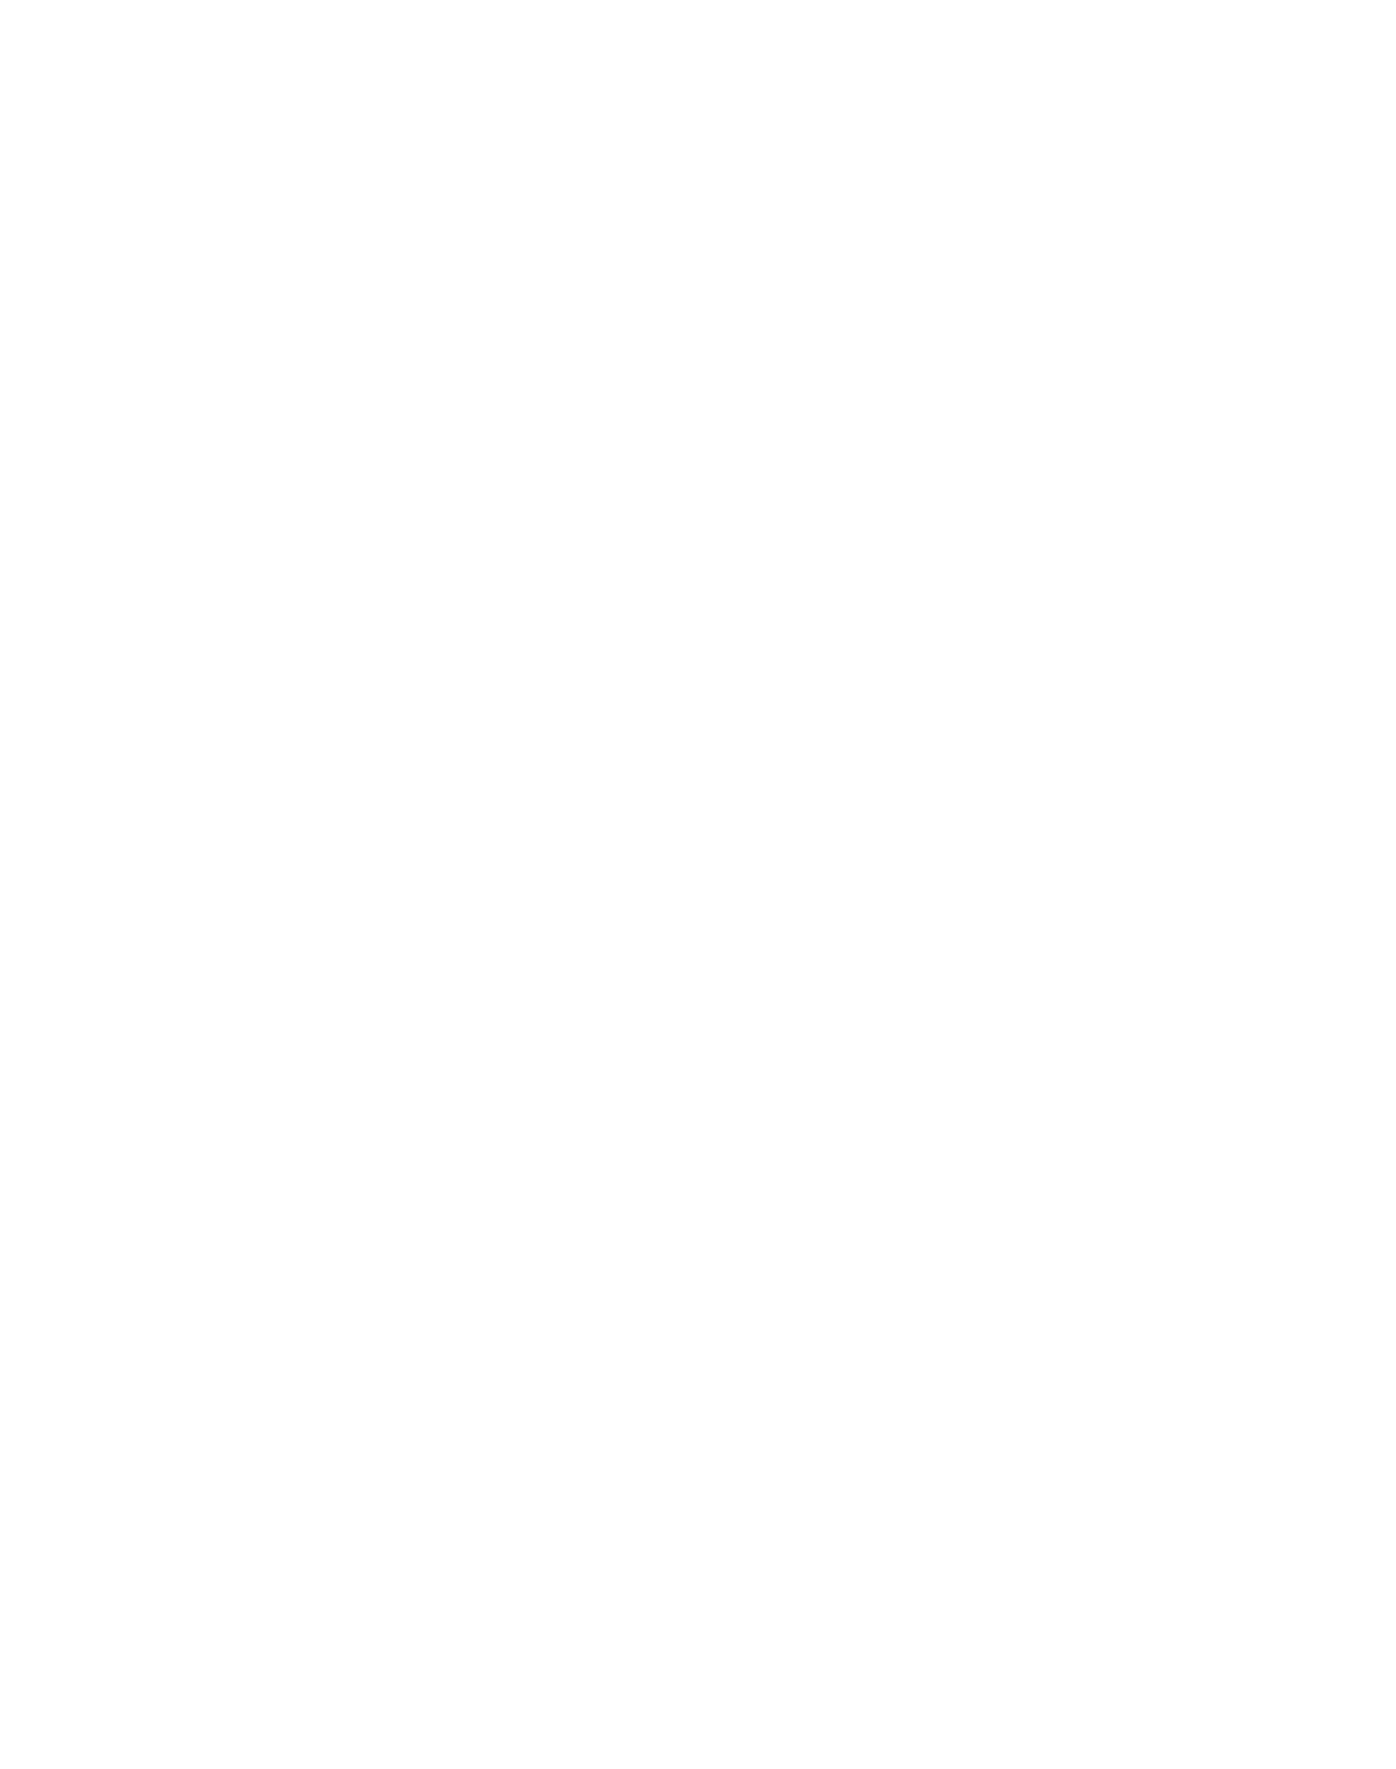 Fiverr logo for dark backgrounds (transparent PNG)